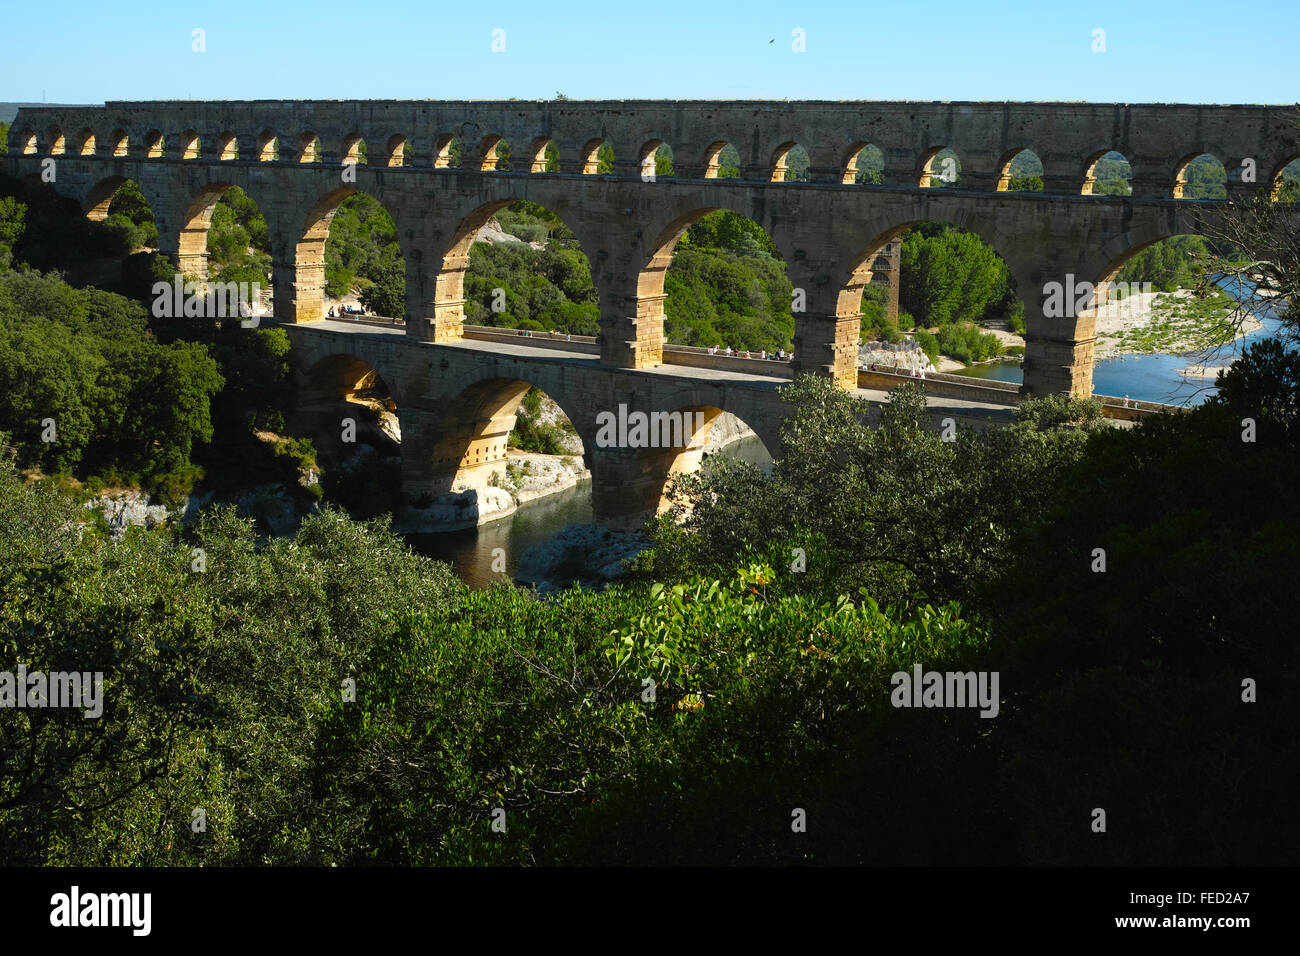 Pont du Gard (Gard-Brücke) ist ein altes römisches Aquädukt, das den Fluss Gardon in der Nähe von Remoulins, Südfrankreich, überquert. Stockfoto